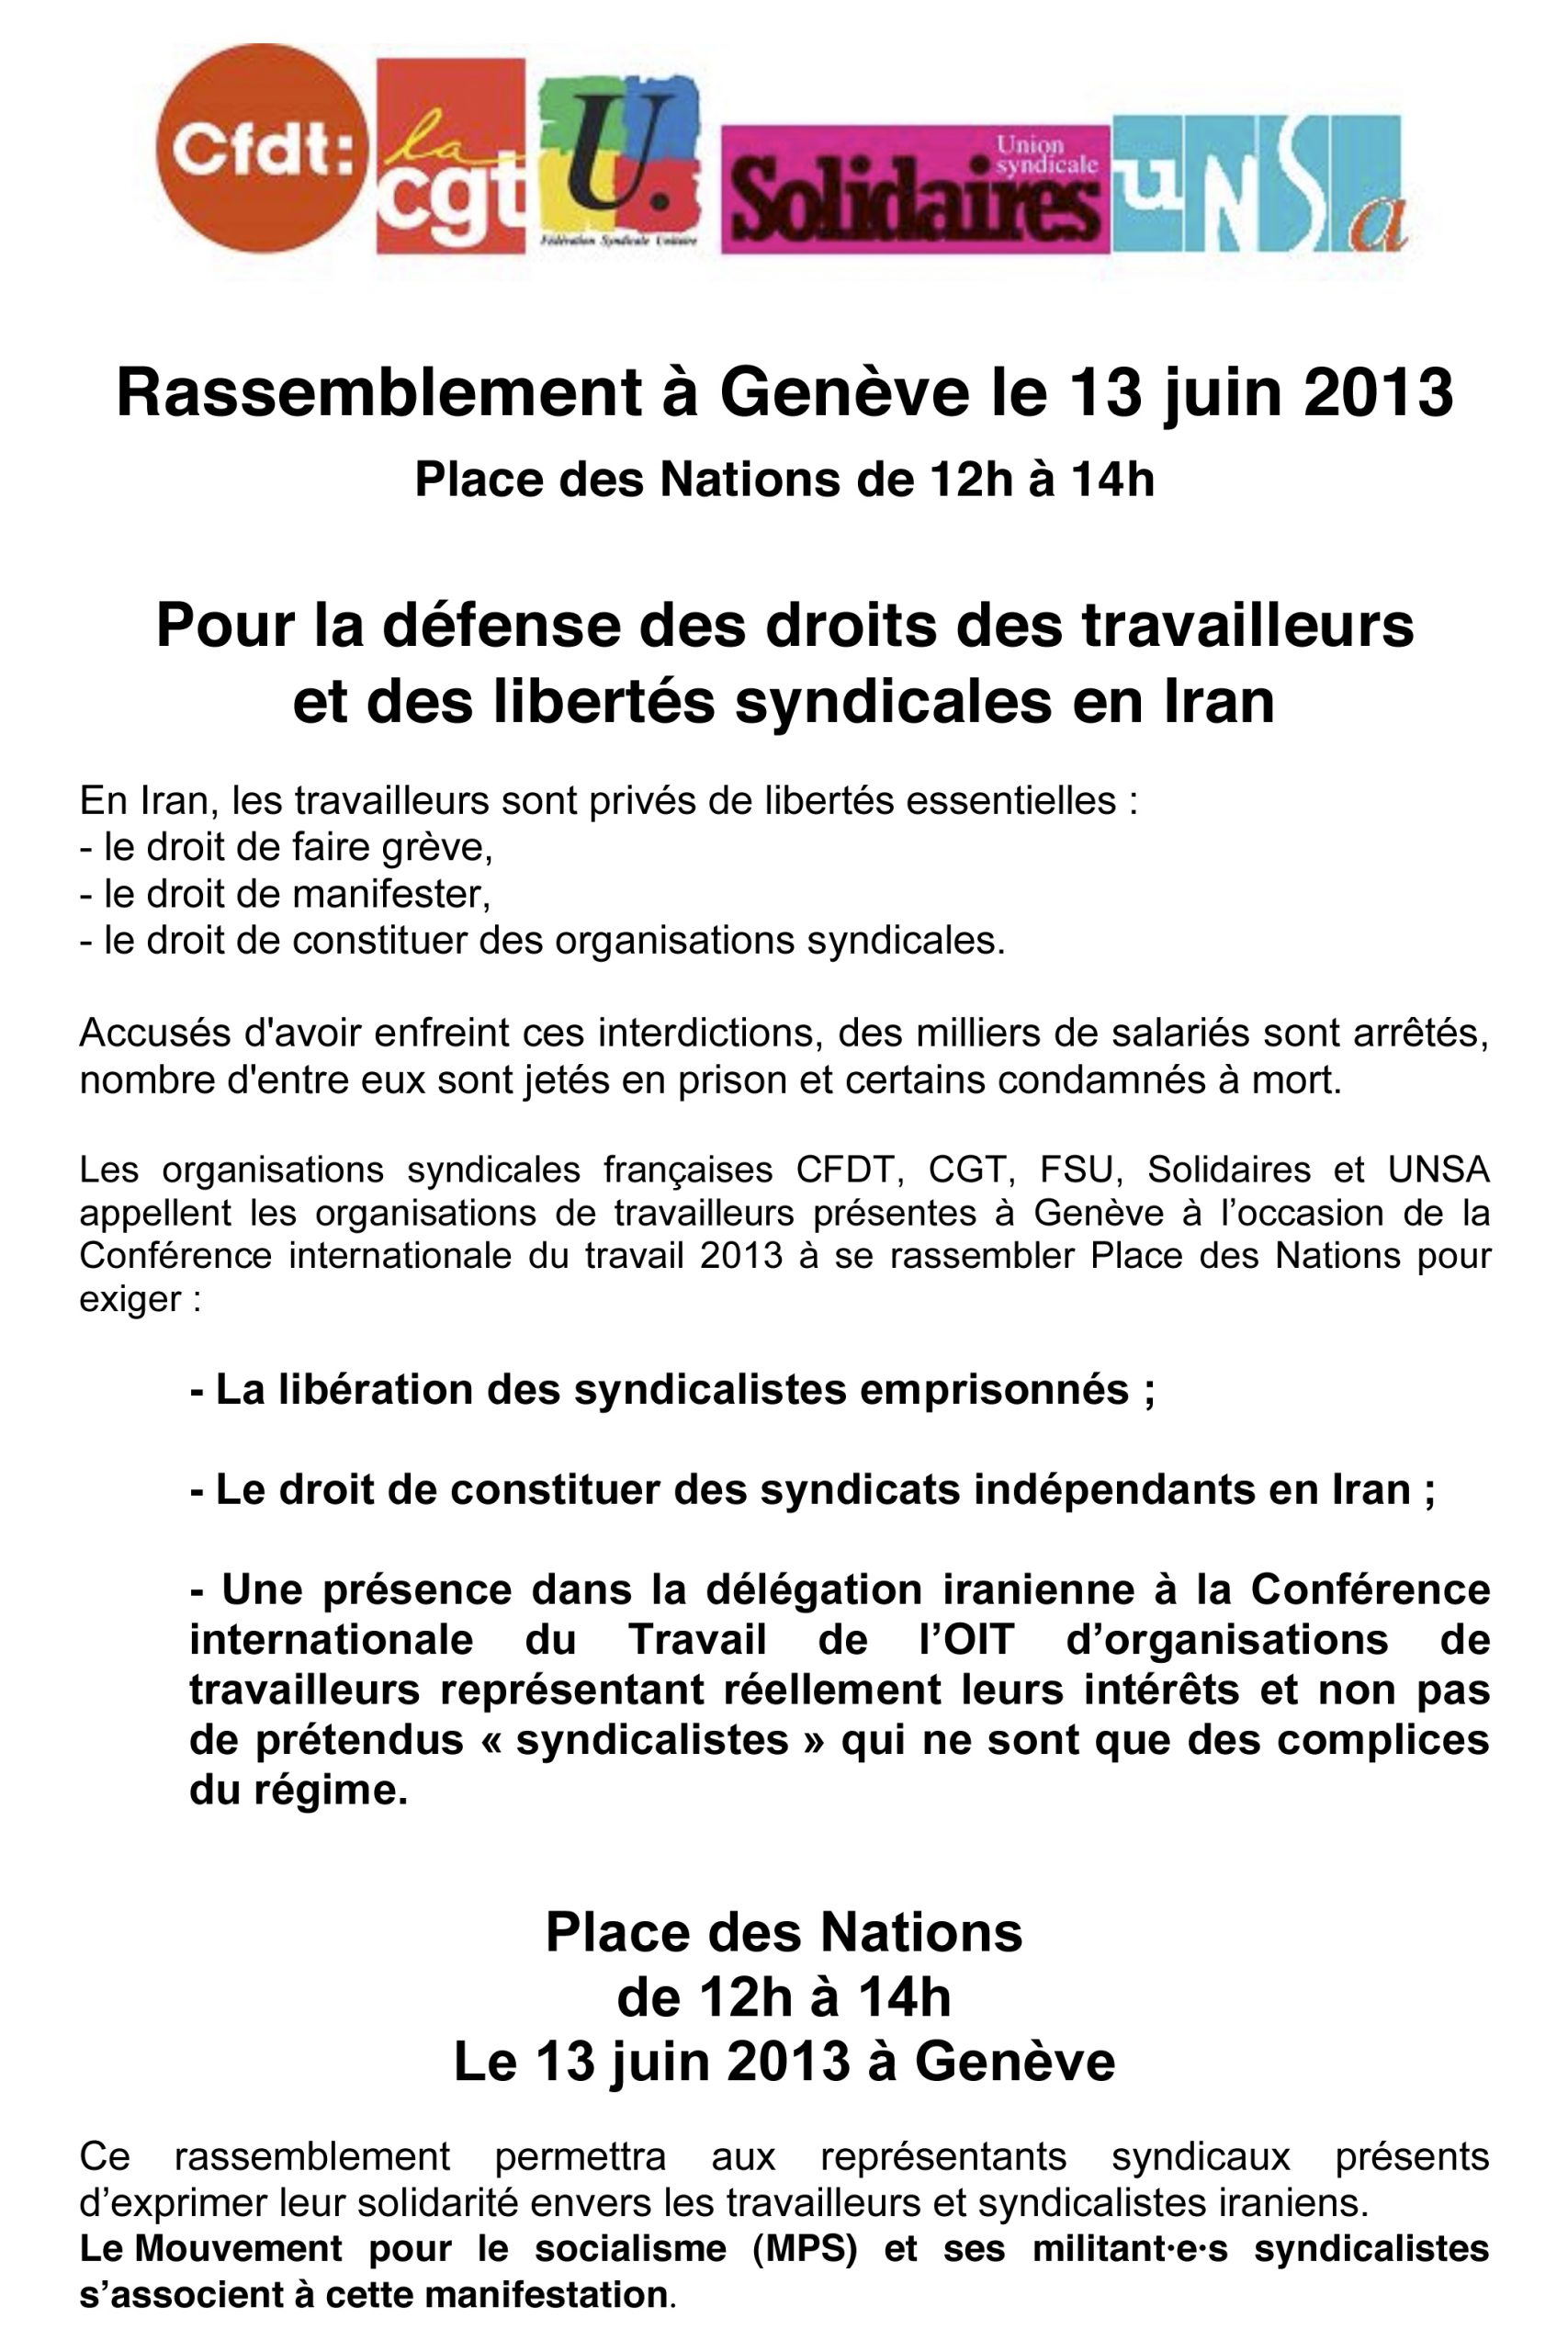 Pour la défense des droits des travailleurs et des libertés syndicales en Iran. Rassemblement à Genève le 13 juin 2013. Place des Nations de 12h à 14h